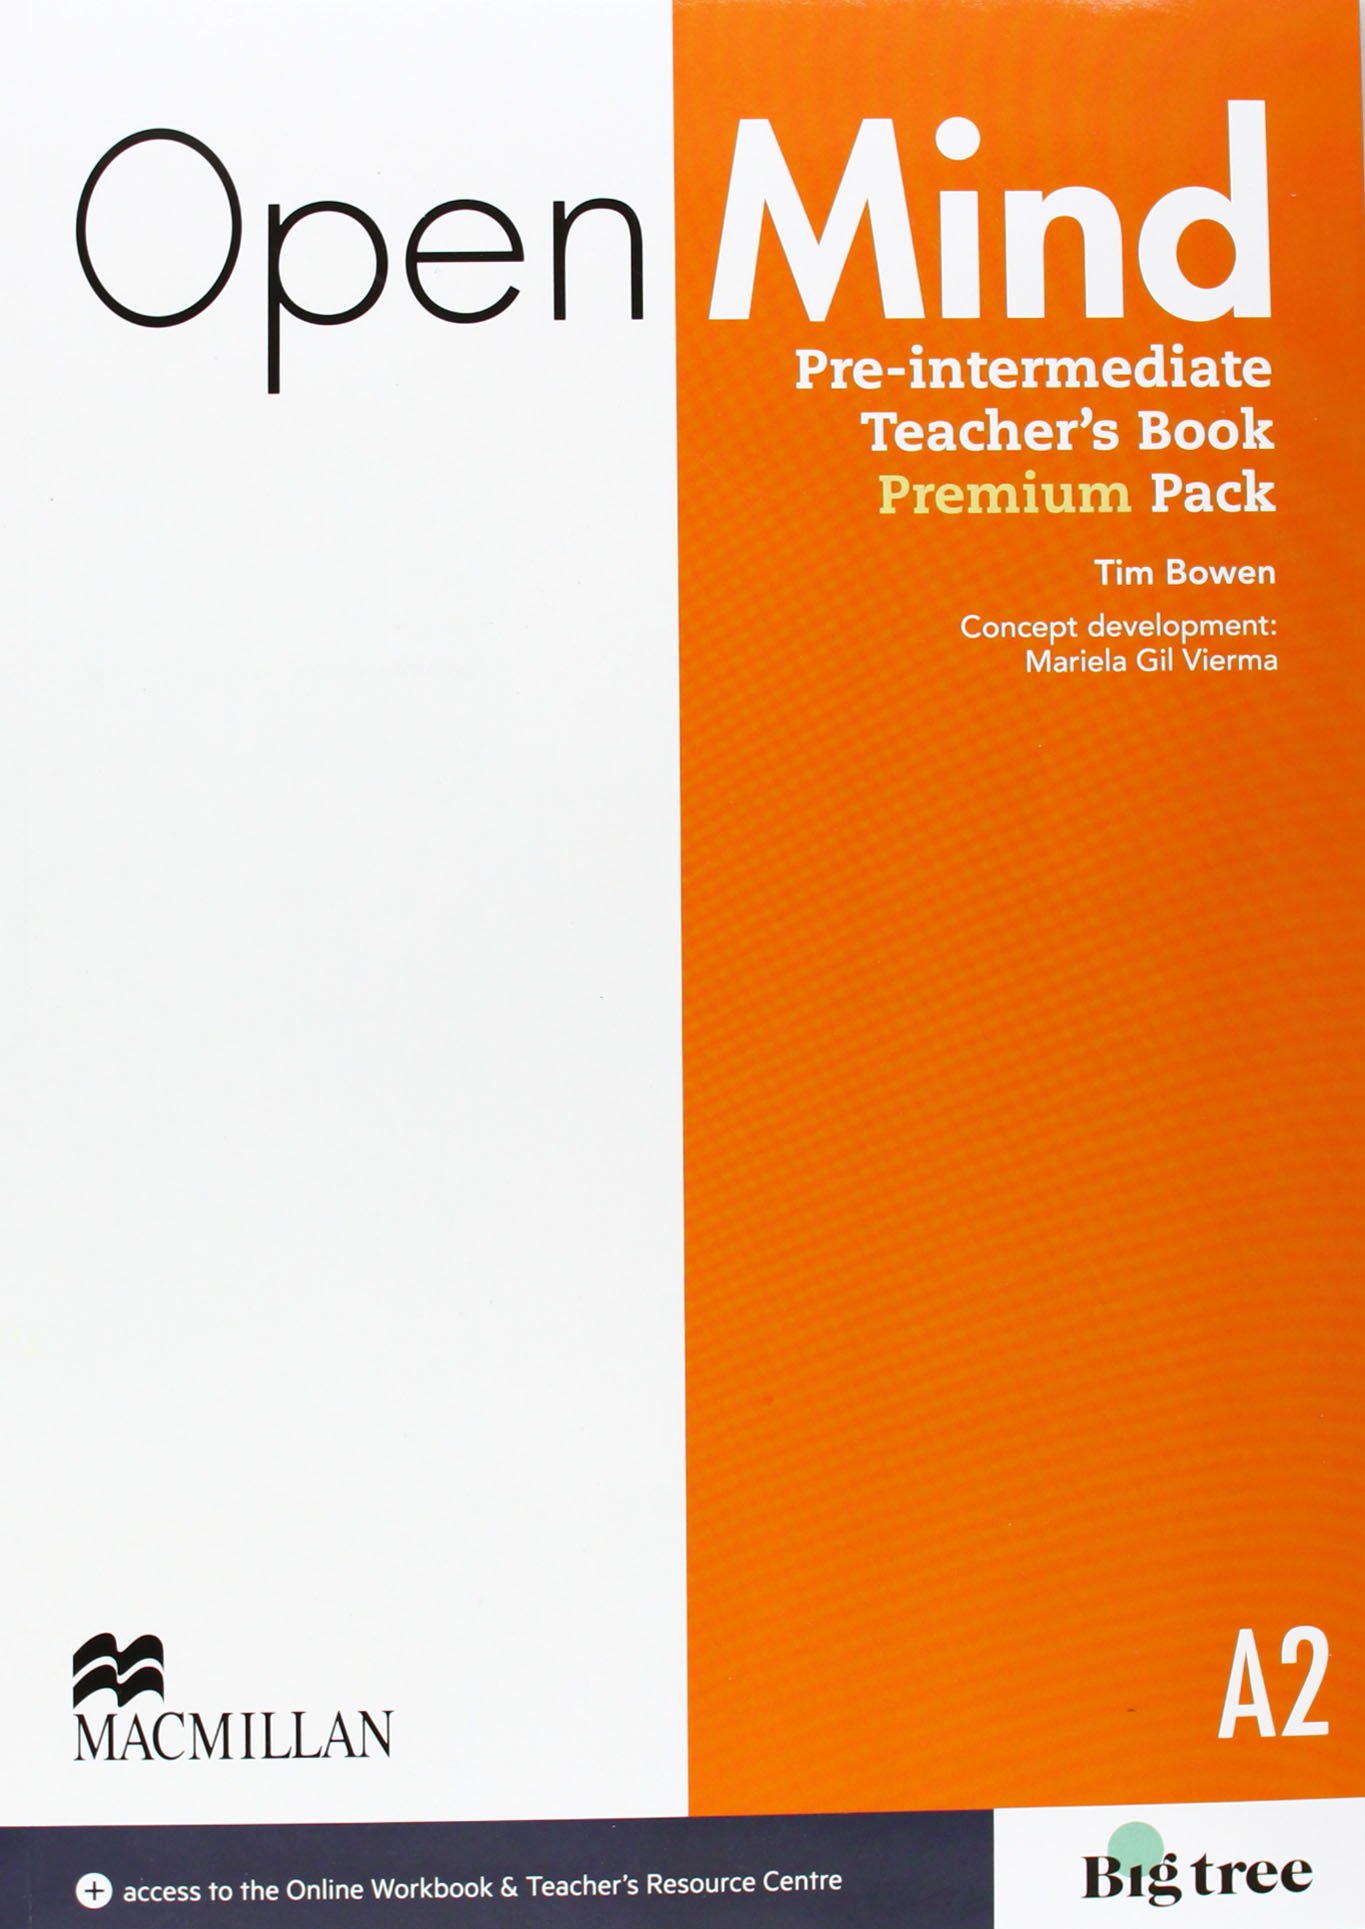 OPEN MIND PRE-INTERMEDIATE Teacher's  Book Premium Pack